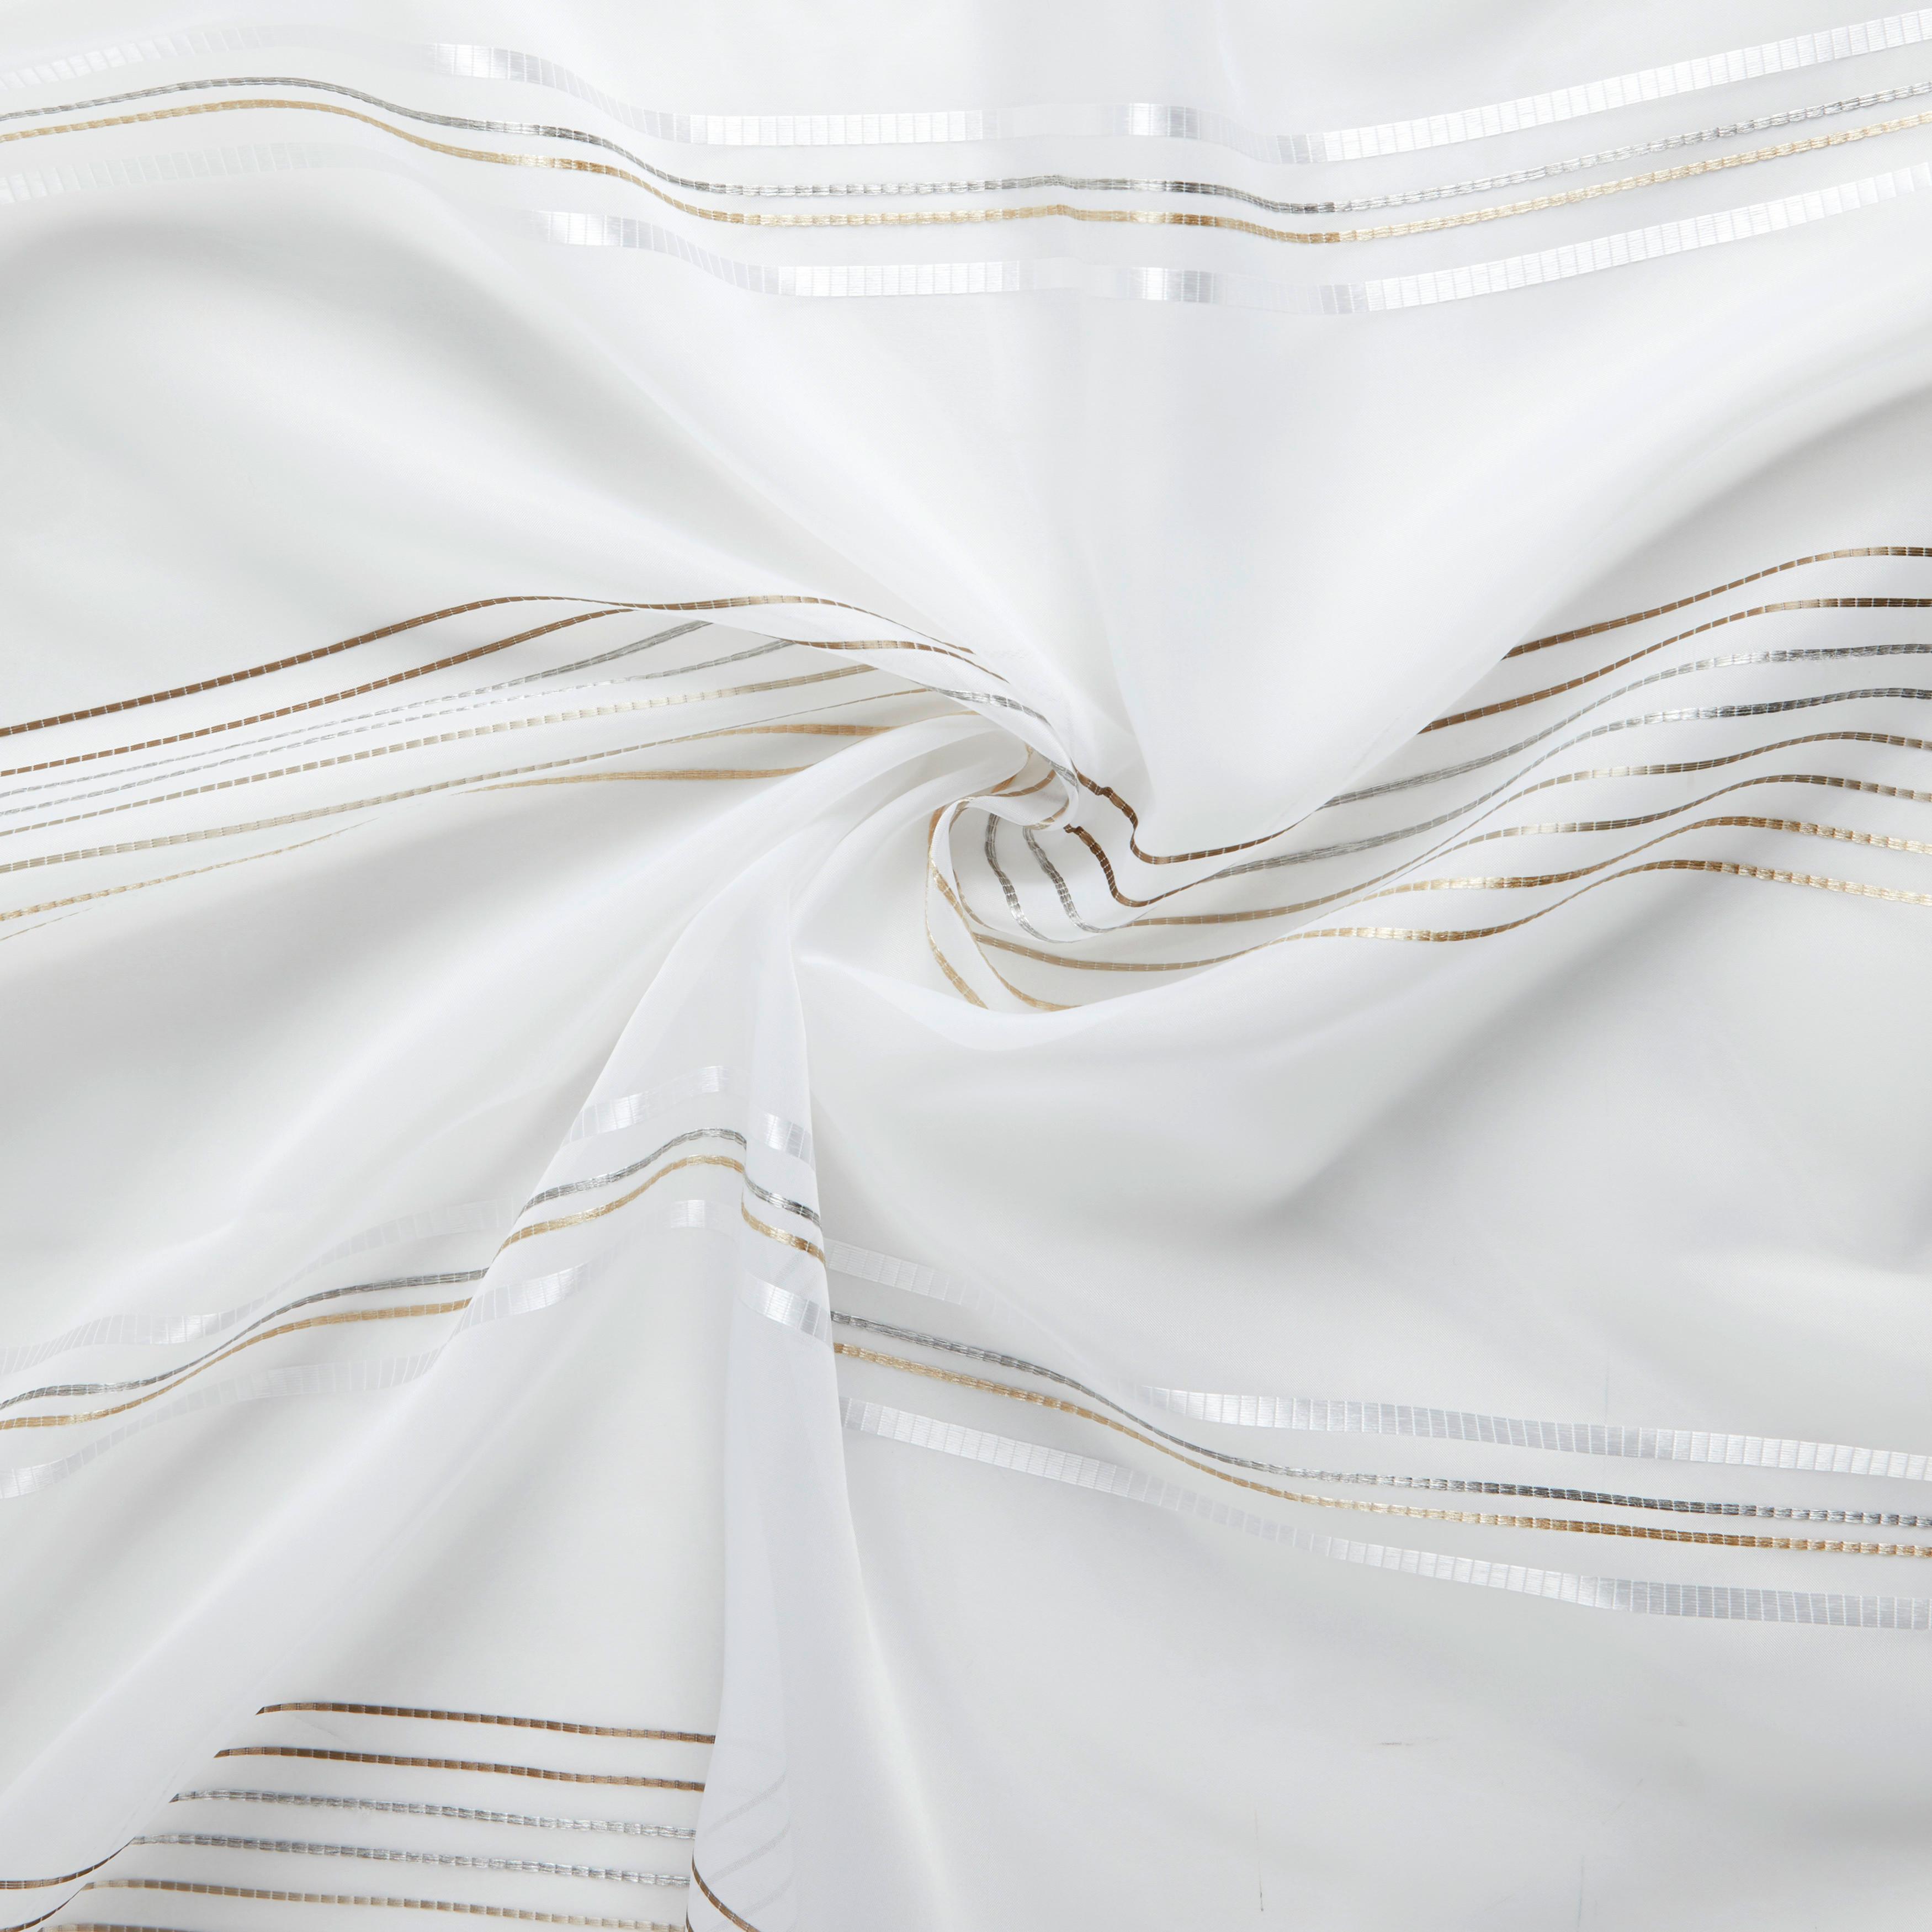 Készfüggöny Louis 140/245 - Barna/Fehér, konvencionális, Textil (140/245cm) - Modern Living